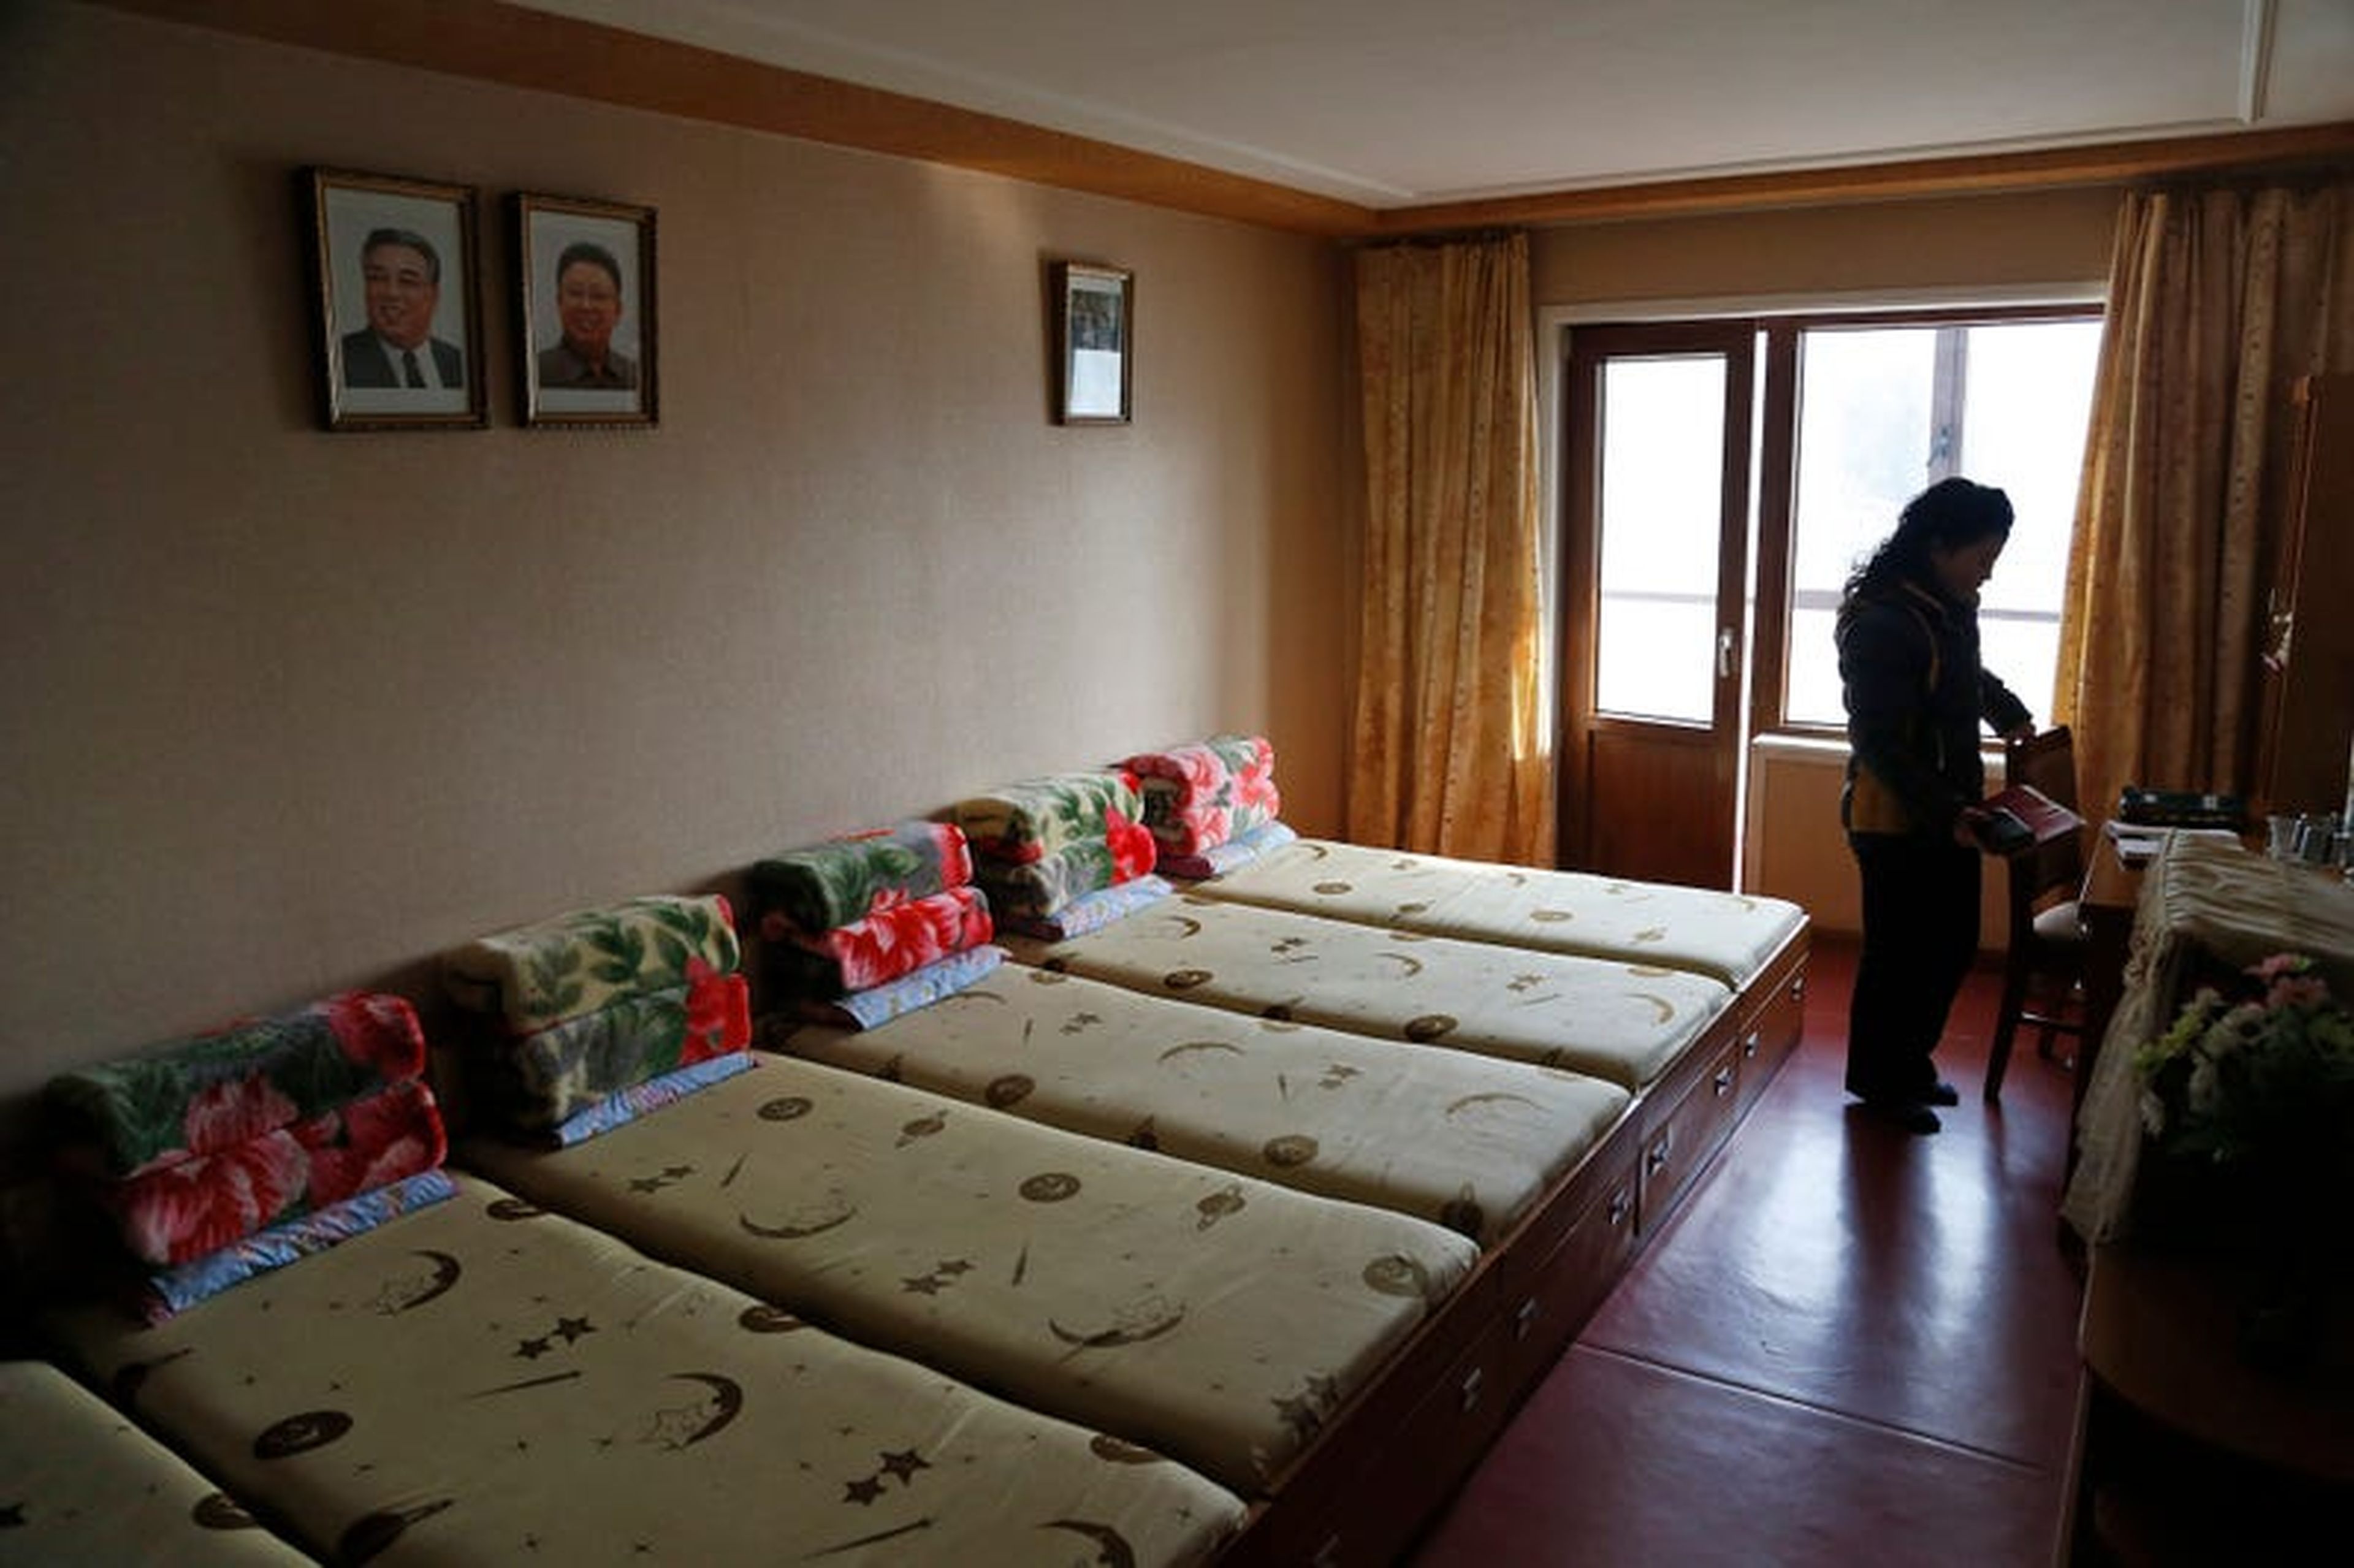 Un empleado se encuentra dentro de una habitación en un dormitorio provisto para trabajadores de fábricas textiles.